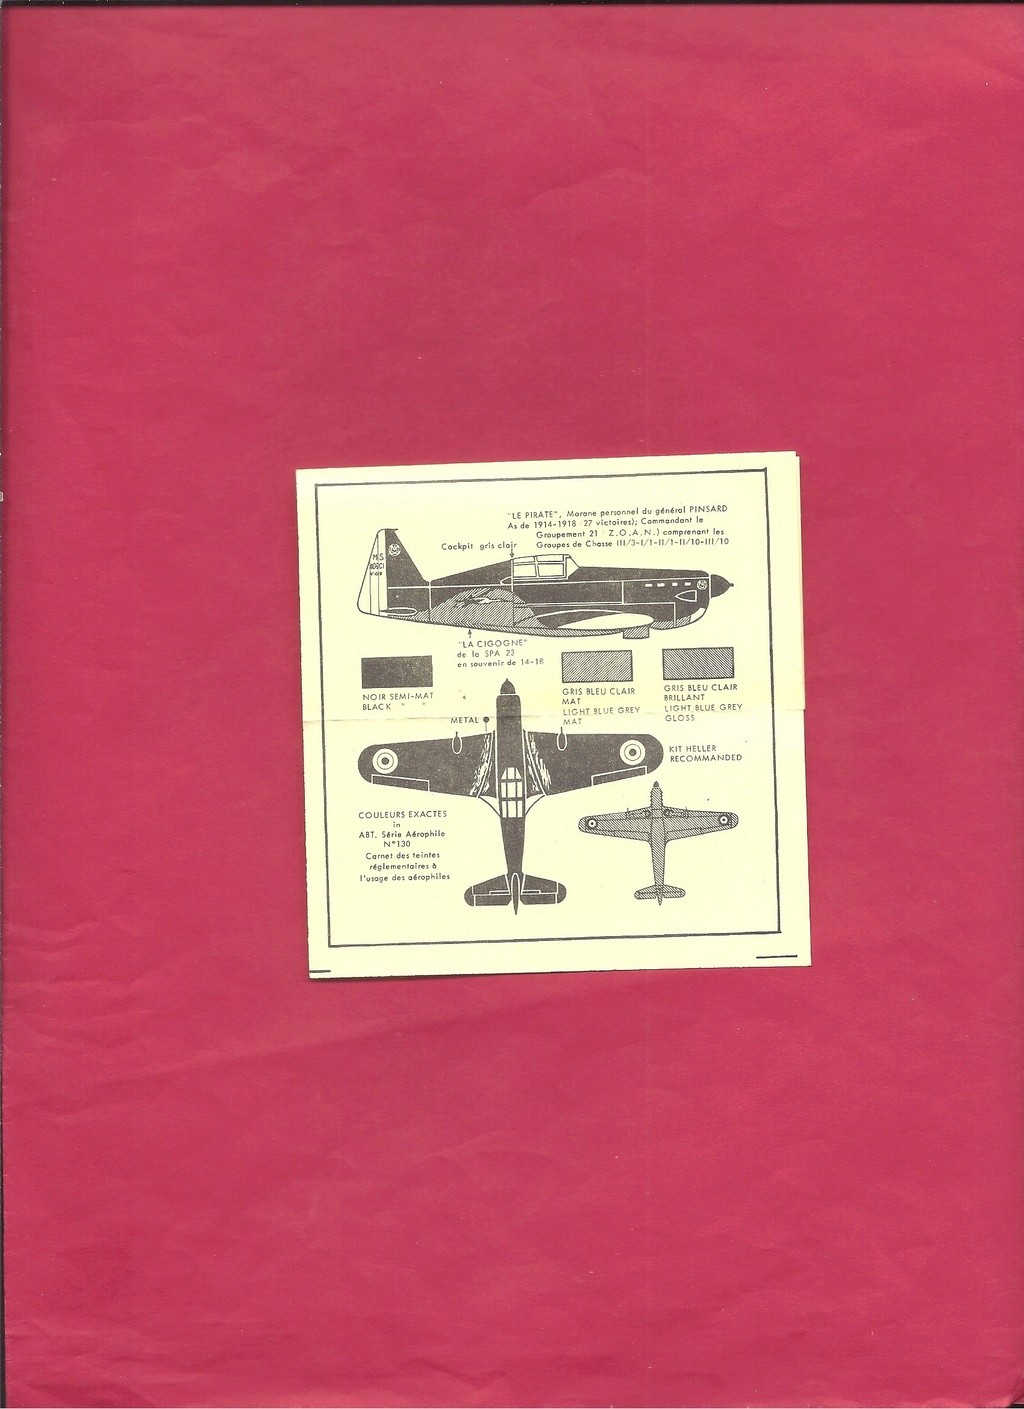 [ABT] Planche de décals MORANE SAULNIER MS 406 C Armée de l Air Groupement 21 Général PINSARD CHANTILLY mai 1940 1/72ème Réf 135  Abt_dy59